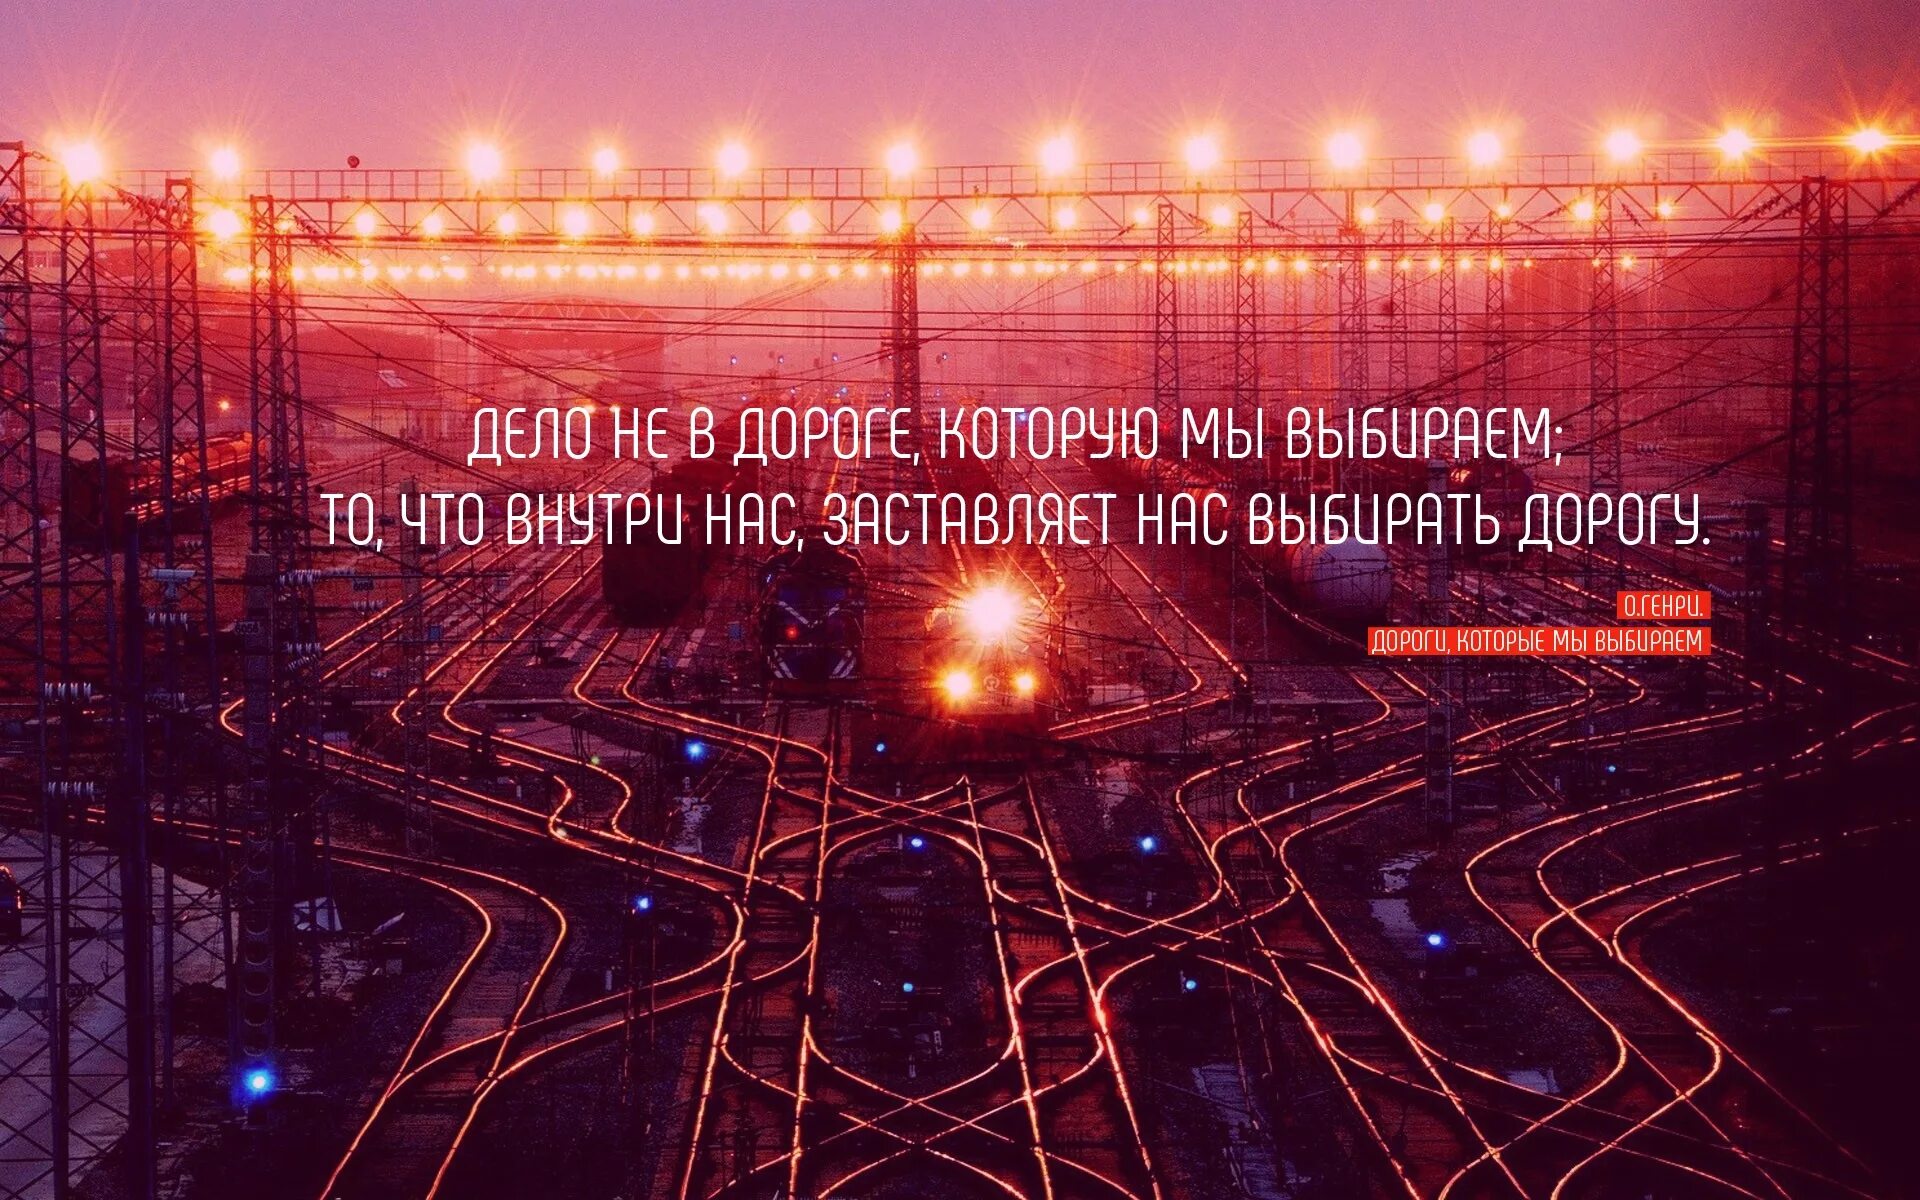 Не смотря на ту дорогу. Цитаты про дорогу. Цитаты про железную дорогу. Красивые фразы про железную дорогу. Красивые фразы про дорогу.